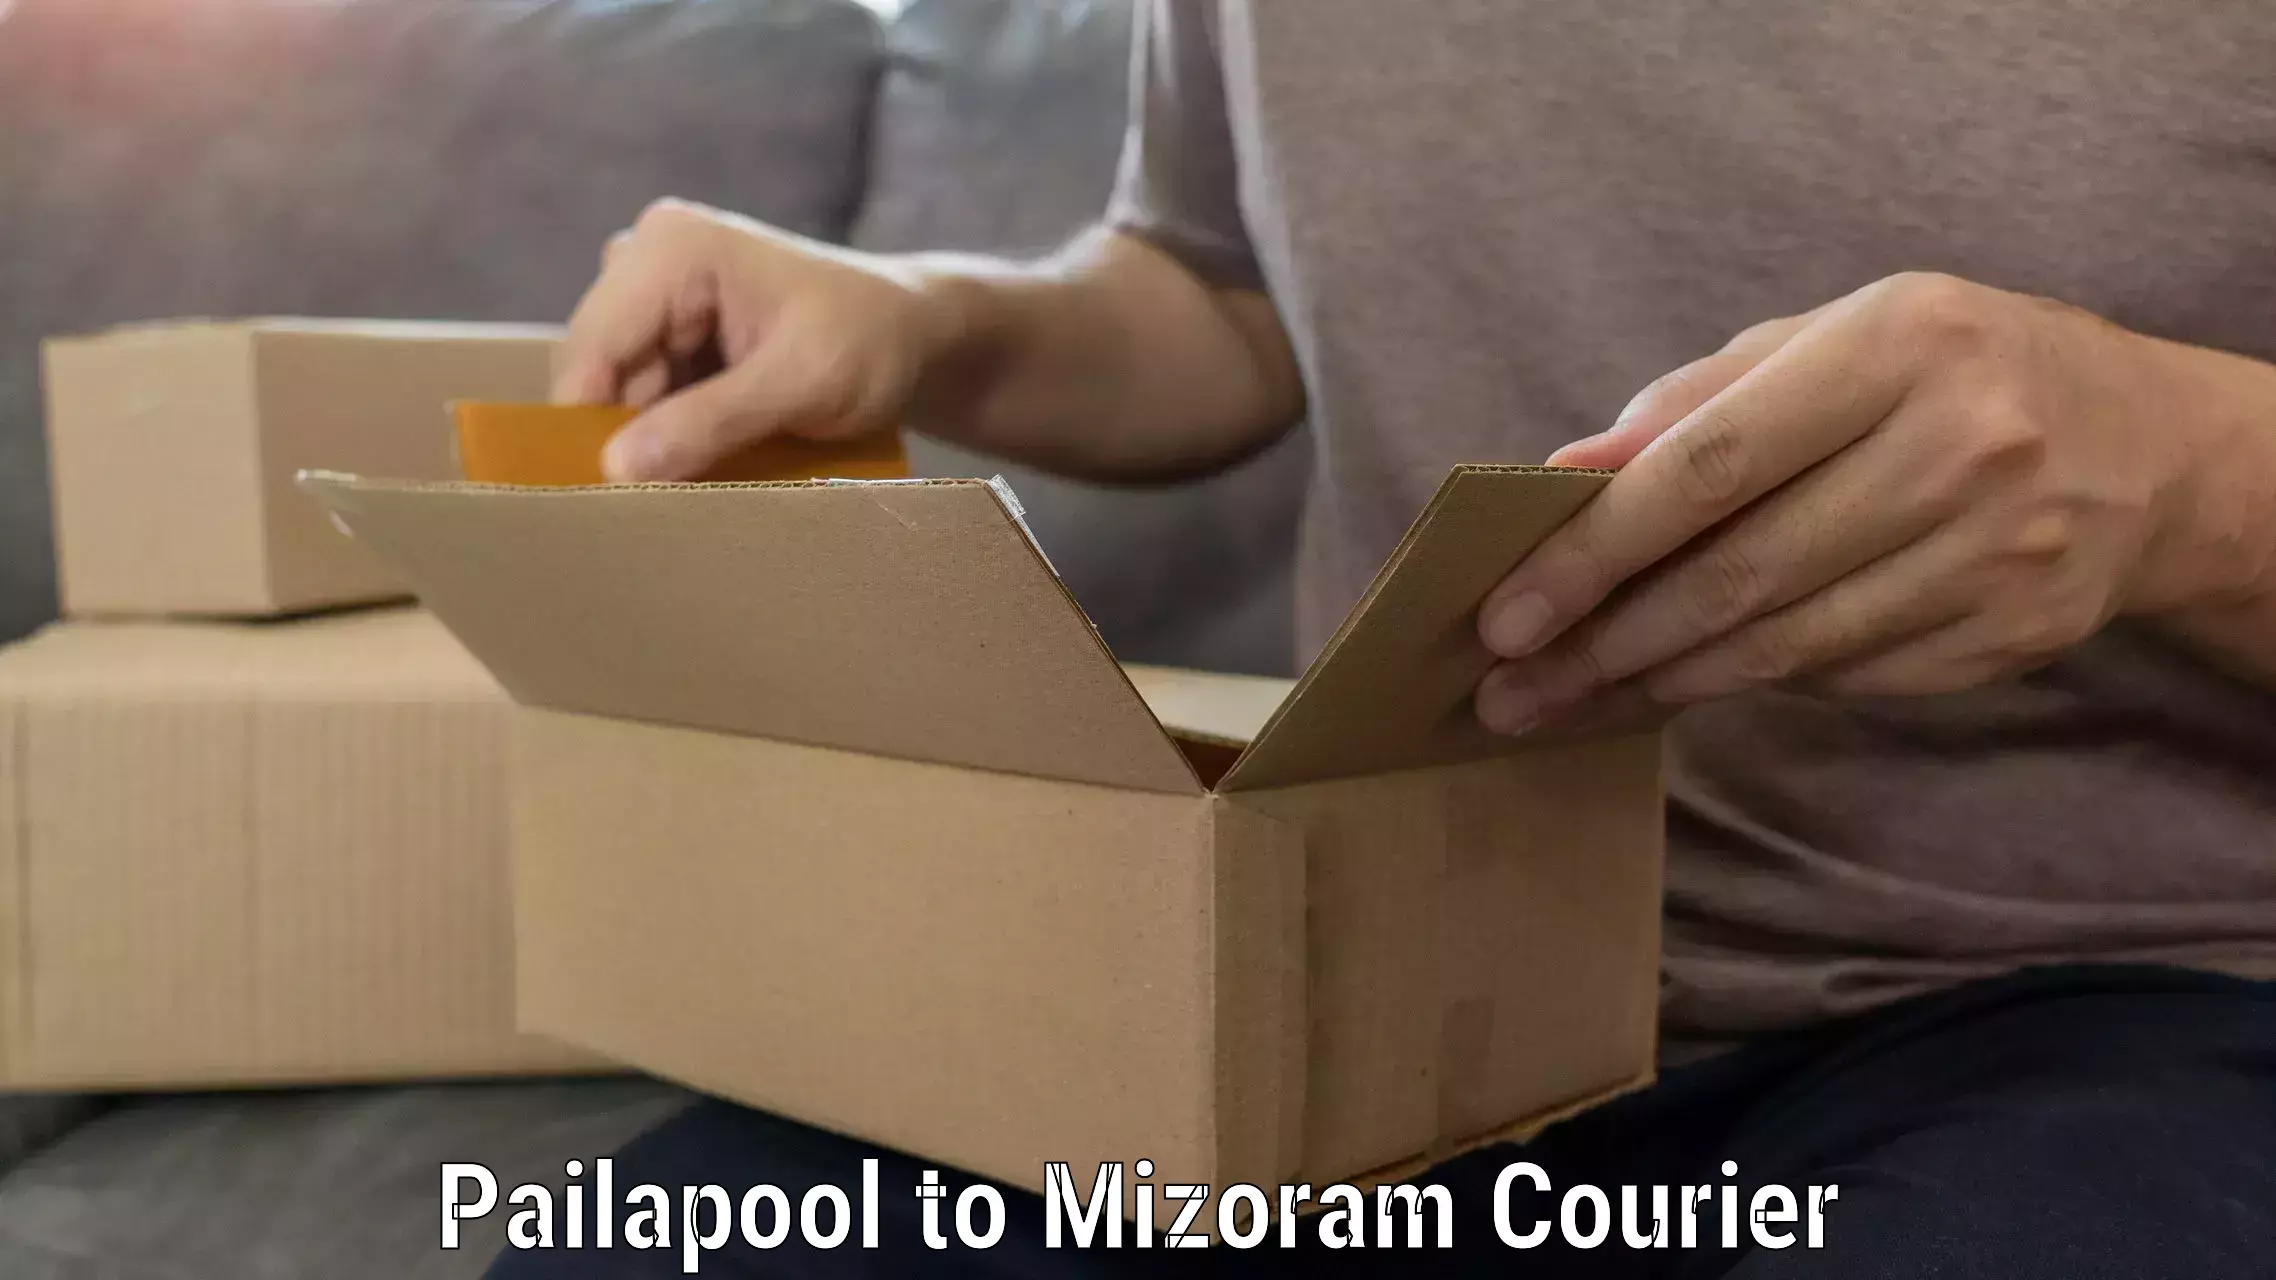 Premium moving services Pailapool to Mizoram